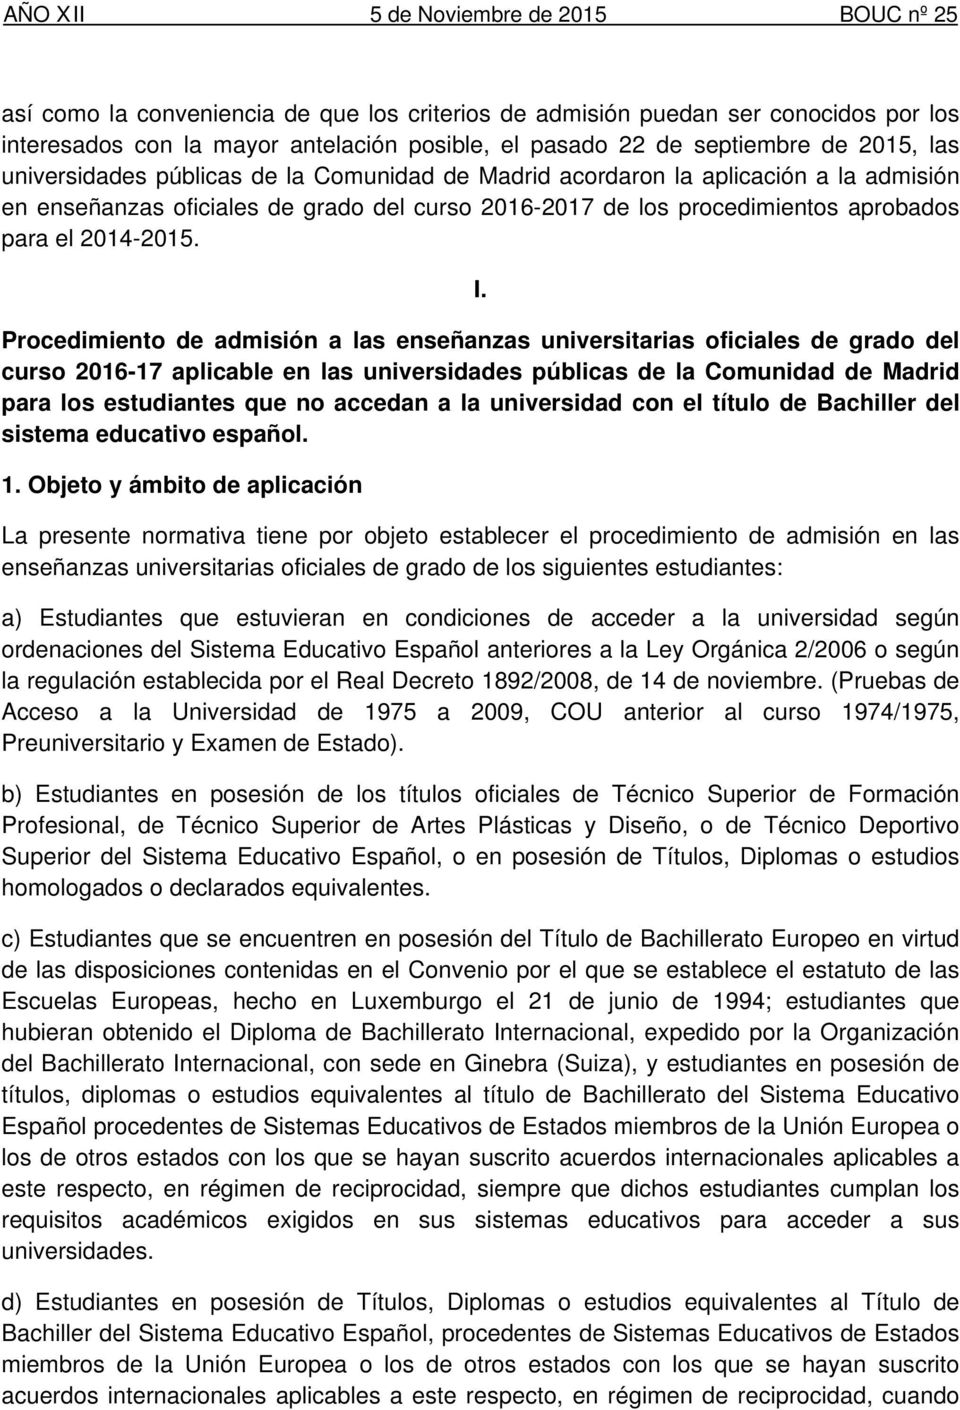 Procedimiento de admisión a las enseñanzas universitarias oficiales de grado del curso 2016-17 aplicable en las universidades públicas de la Comunidad de Madrid para los estudiantes que no accedan a